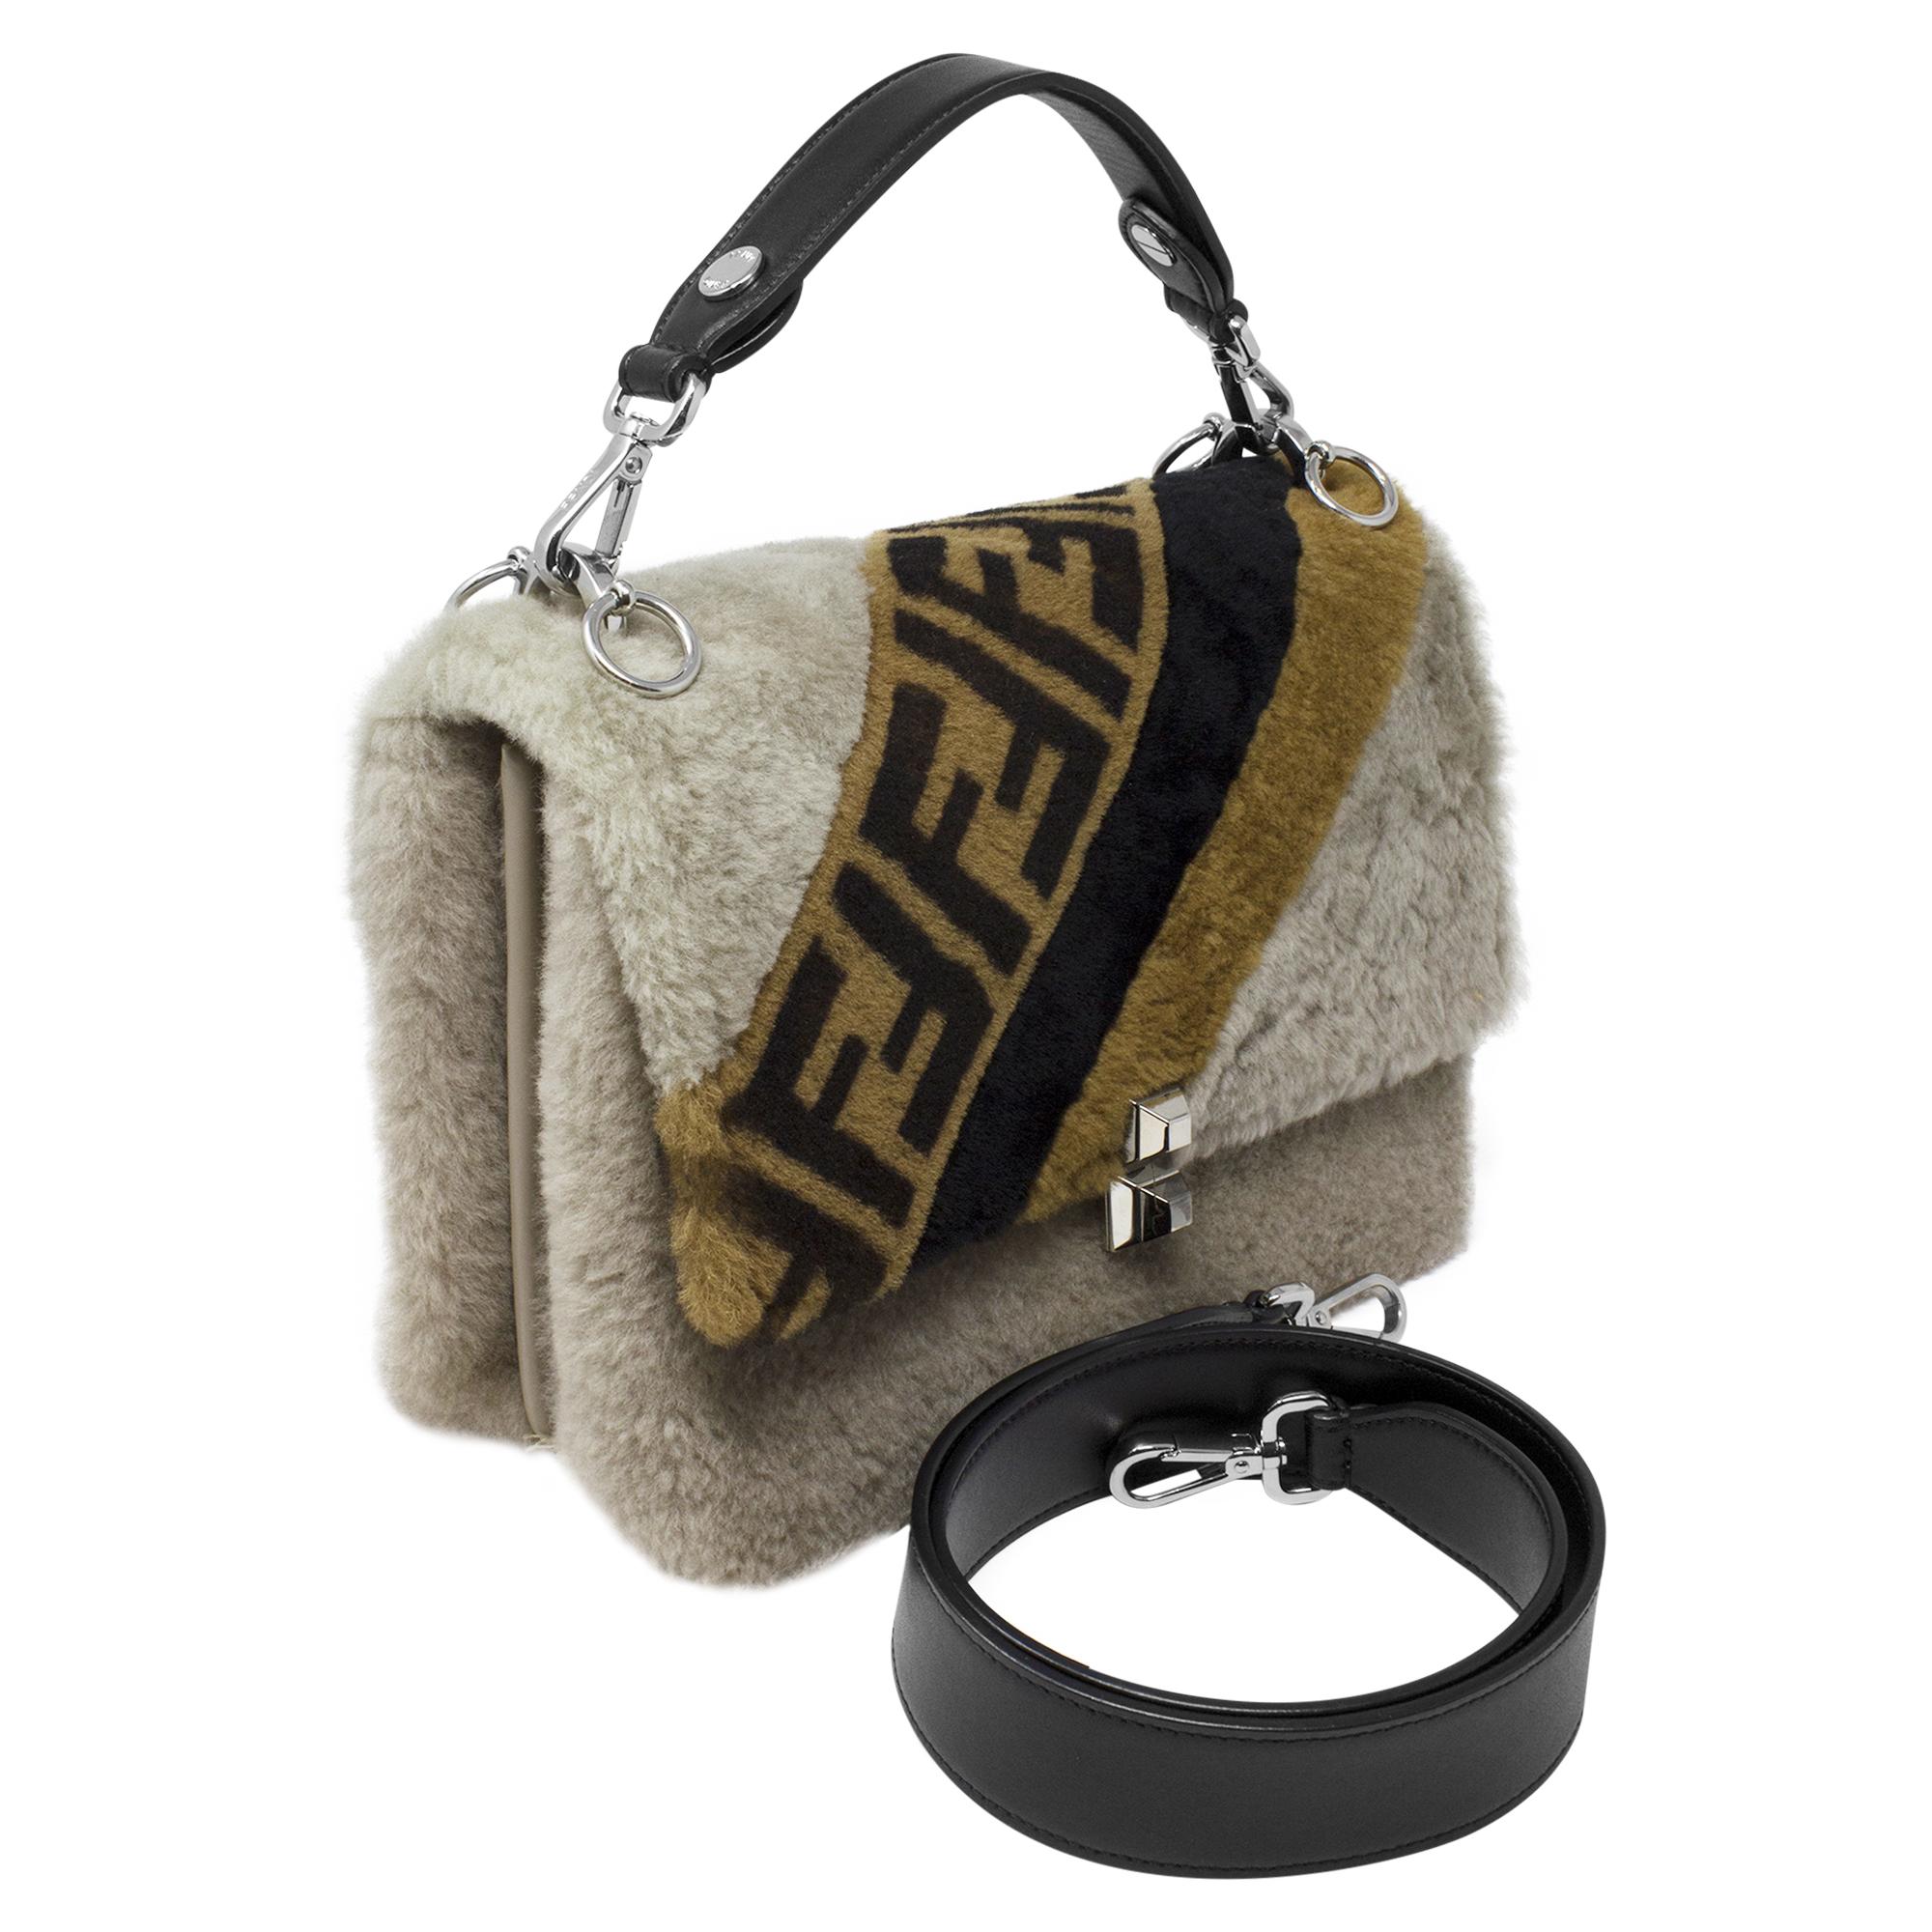 Le sac à rabat en shearling Zucca, édition limitée de Fendi, est une pièce de luxe pour les connaisseurs de la mode. Confectionné en somptueuse fourrure de shearling beige, ce sac respire l'opulence et l'élégance. Orné de l'imprimé Zucca